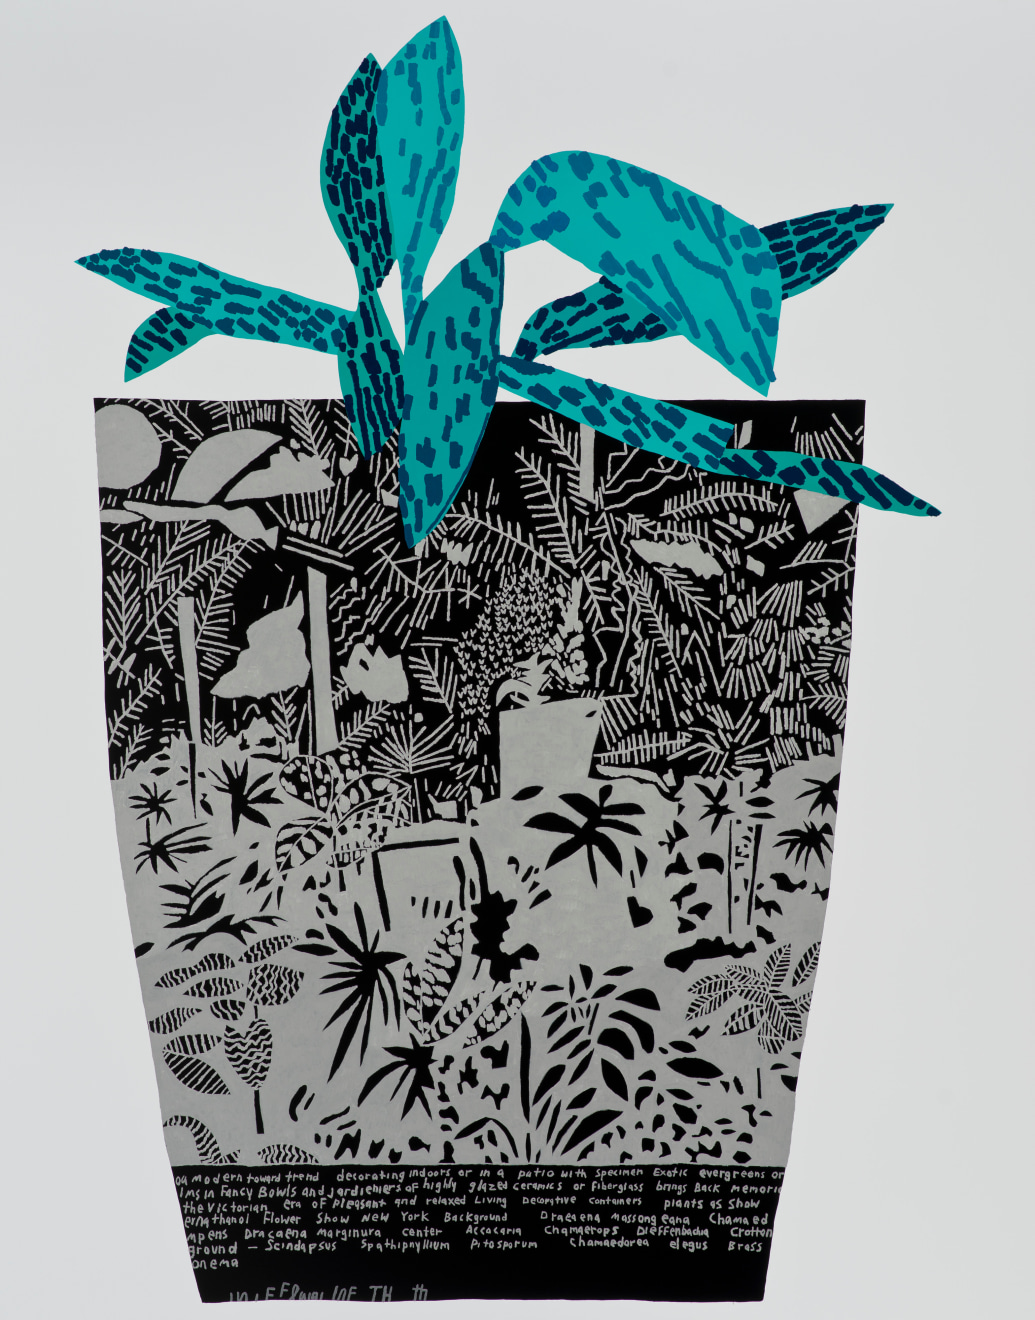 Jonas Wood Black Landscape Pot with Blue Plant, 2014